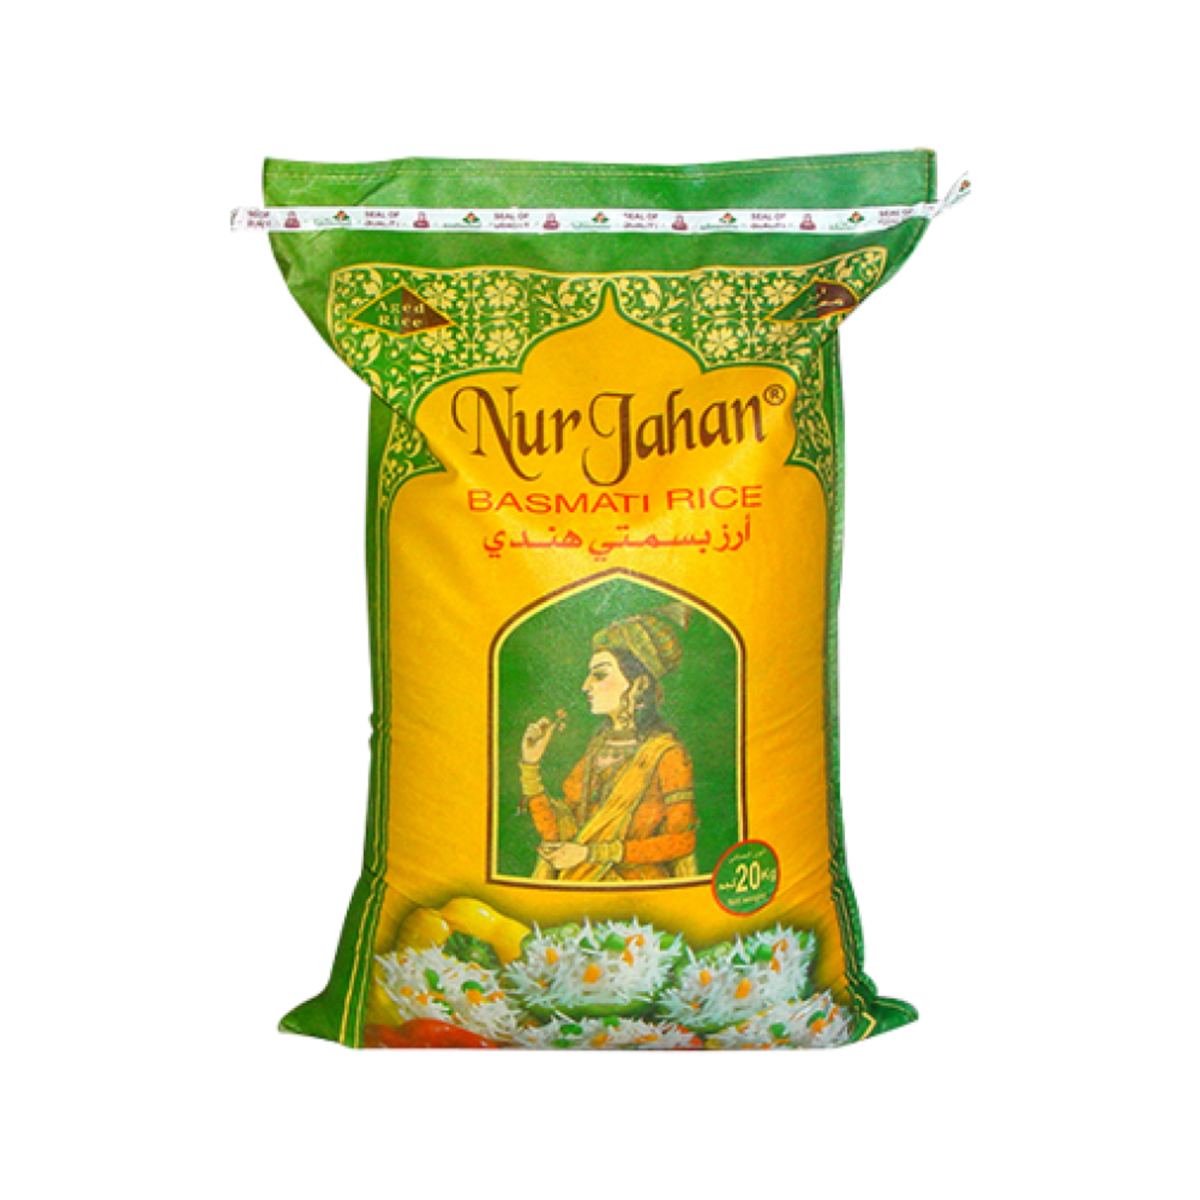 Nurjahan Basmati Rice Value Pack 20kg